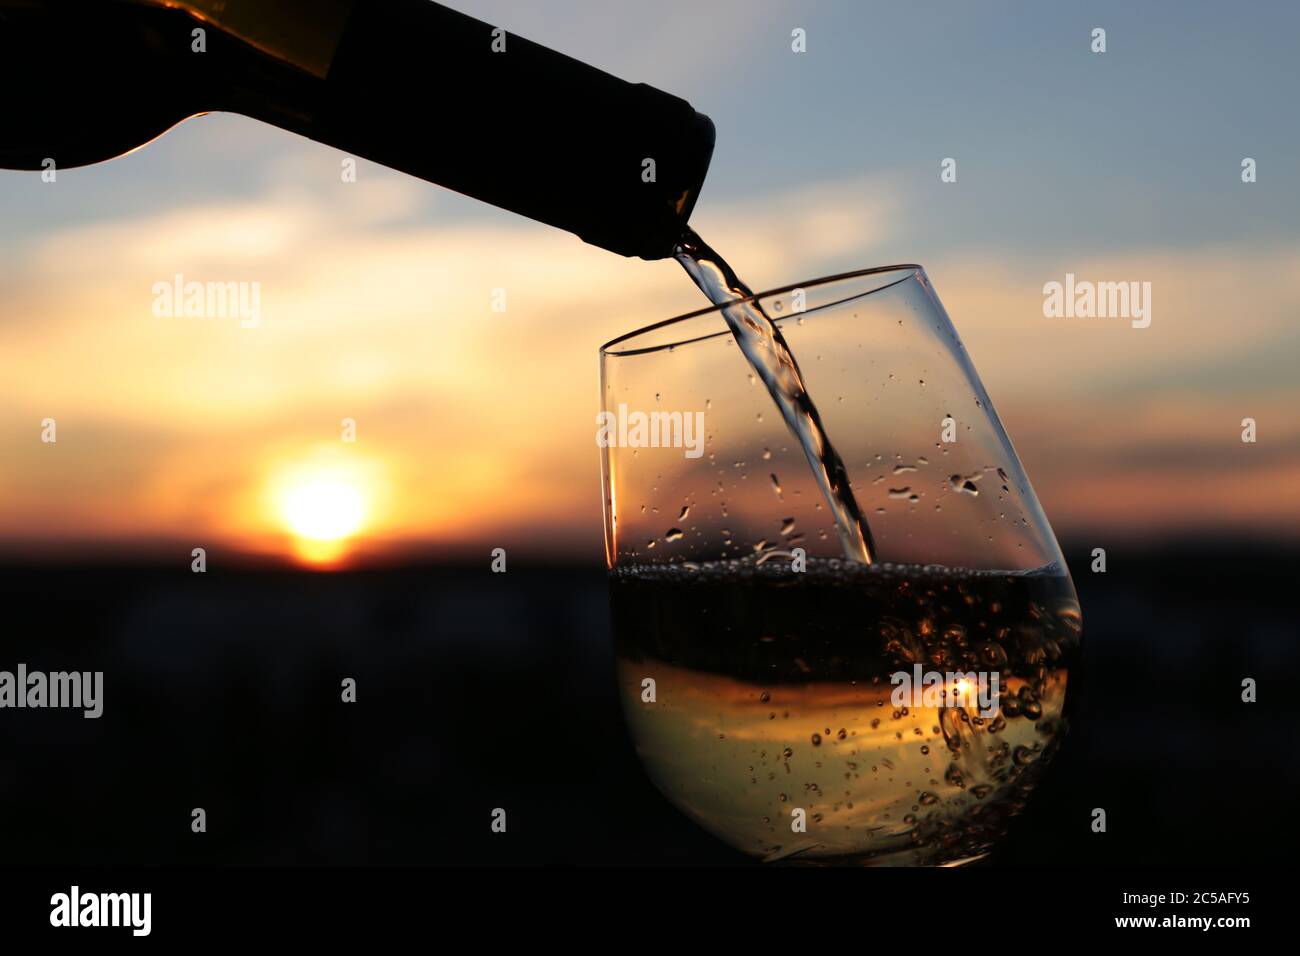 Vino bianco che si versa da una bottiglia nel bicchiere su uno sfondo bellissimo tramonto, fuoco selettivo. Concetto di celebrazione, cena romantica Foto Stock